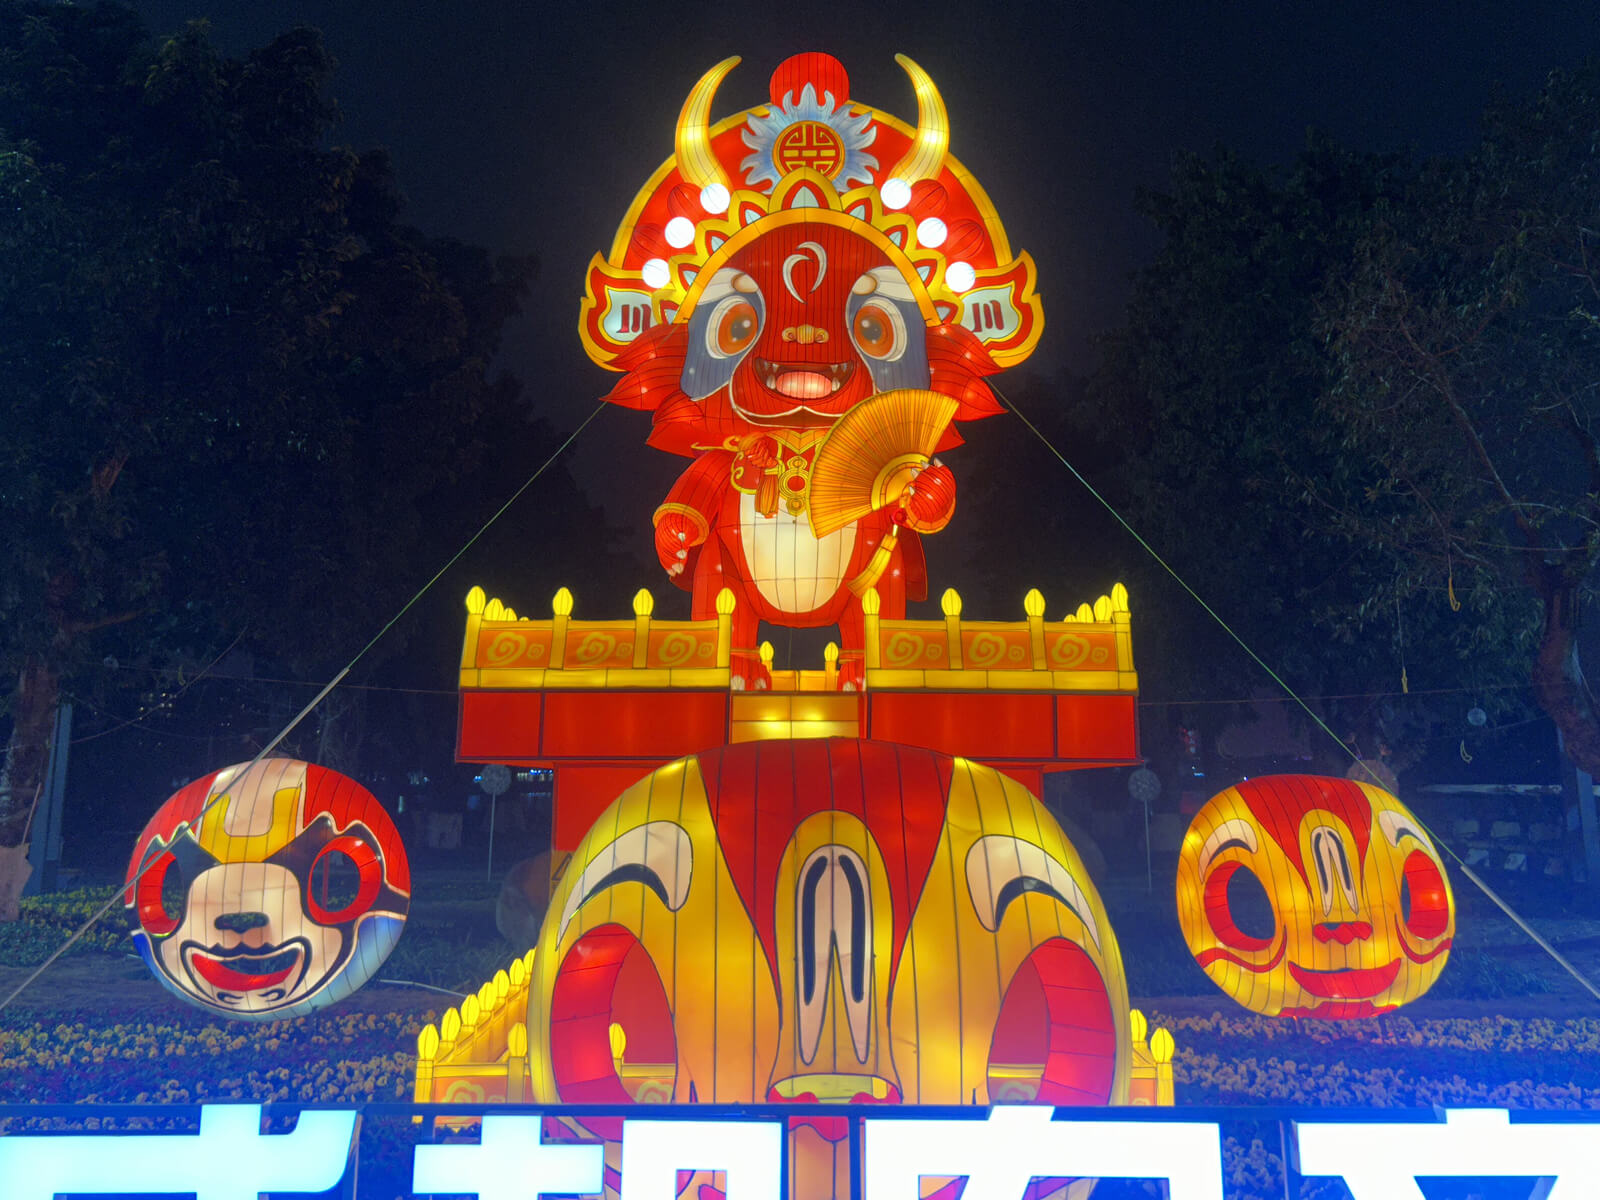 Festival Lantern Project in Chengdu